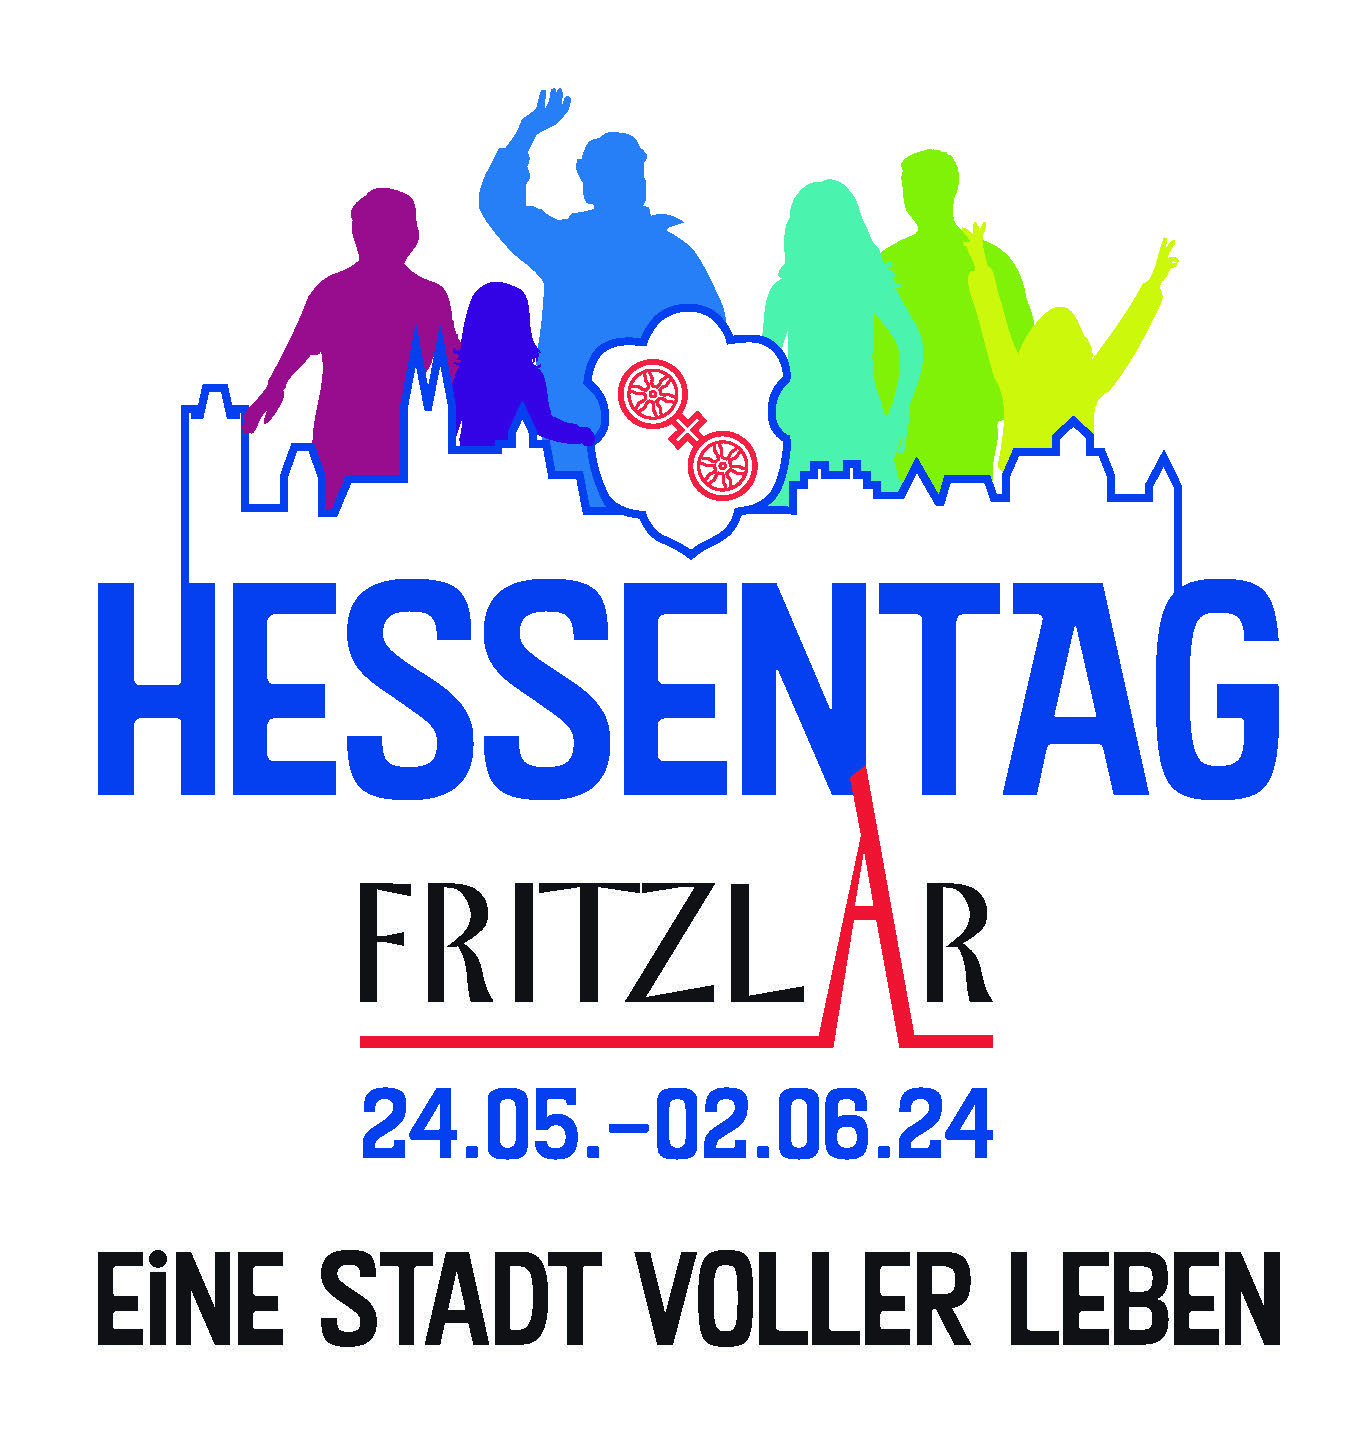 Trachtenland Hessen beim Hessentag in Fritzlar @ Trachtenland Hessen - Bühne am Dom | Fritzlar | Hessen | Deutschland